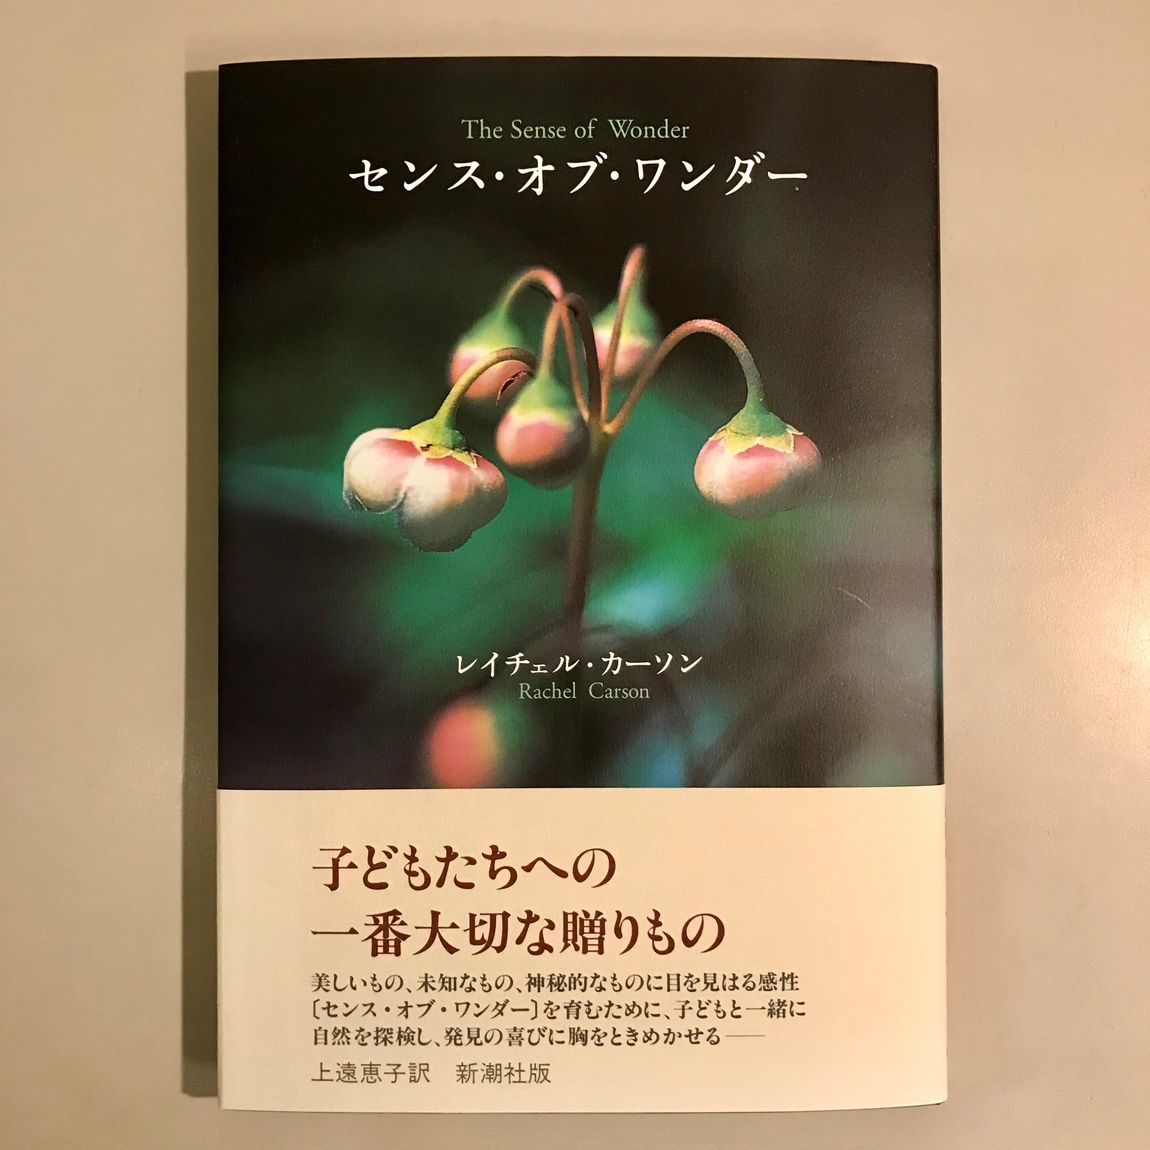 【アトレ恵比寿】MUJI BOOKS 書籍のご紹介『センス・オブ・ワンダー』